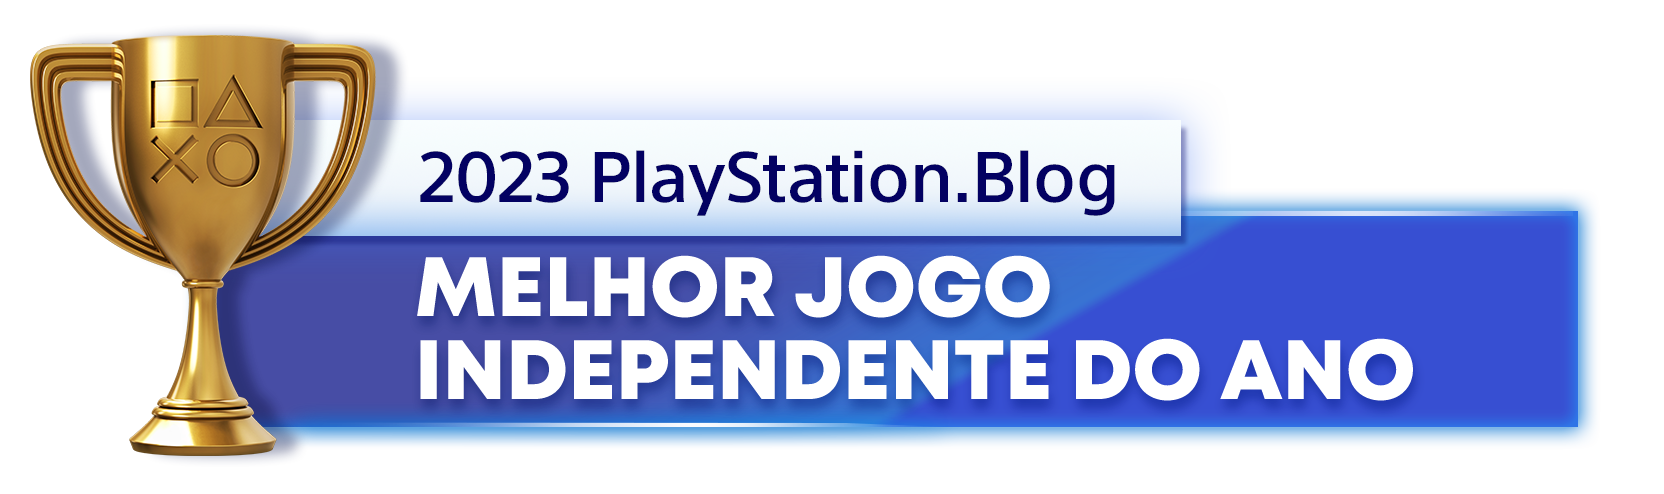  "Troféu de Ouro para o vencedor da categoria Melhor Jogo Independente do Ano de 2023 do PlayStation Blog"